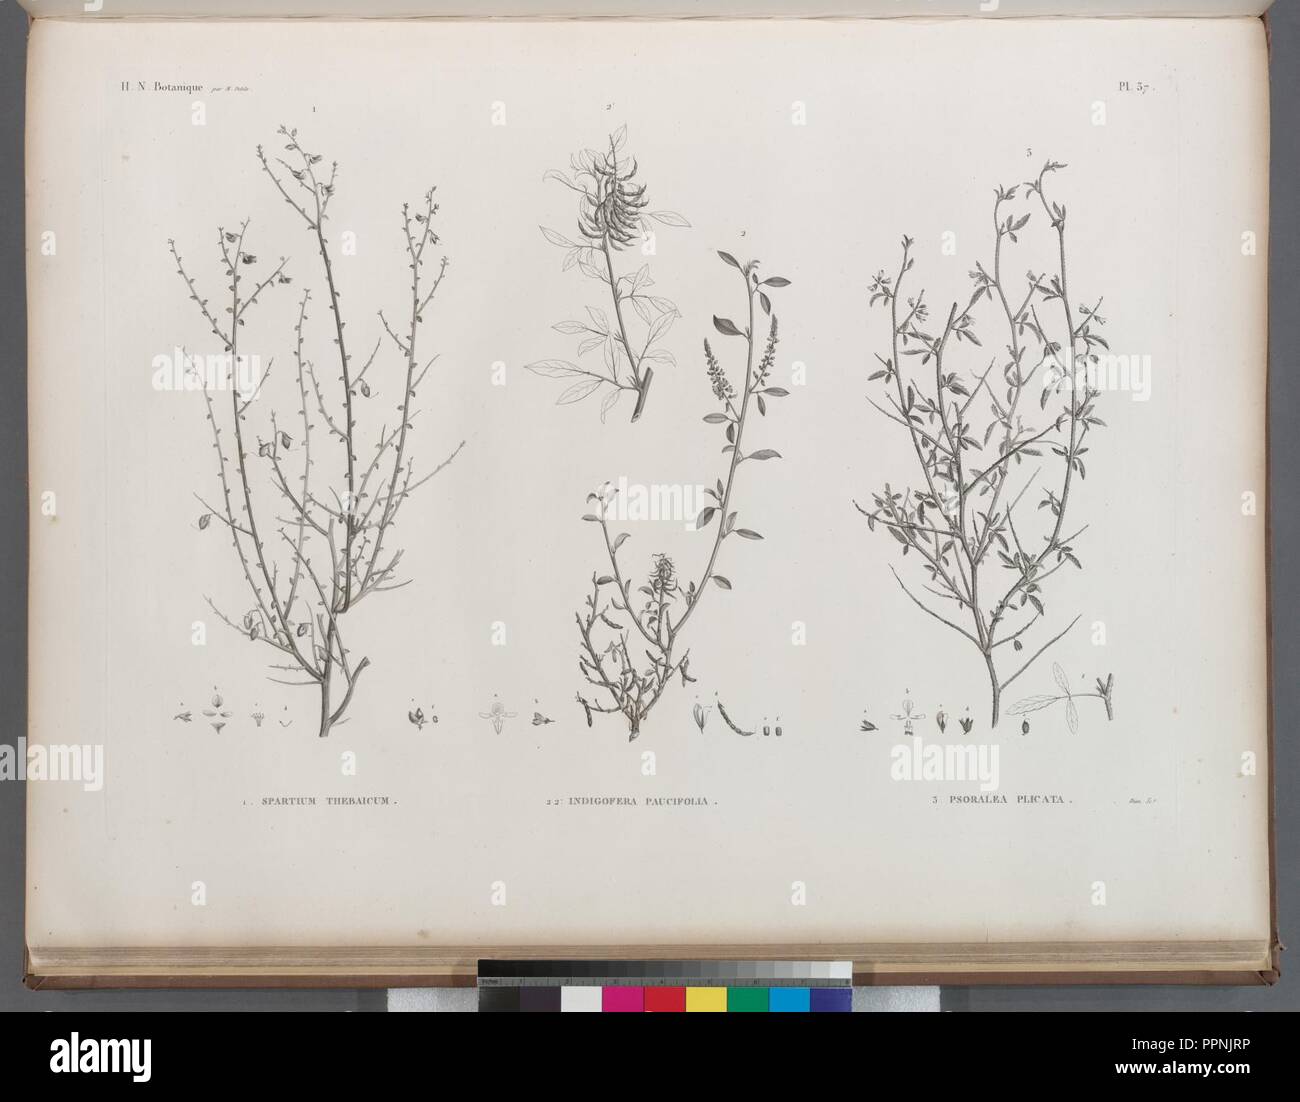 Botanique. 1. Spartium thebaicum; 2.2'. Indigofera paucifolia; 3. Psoralea plicata Stock Photo